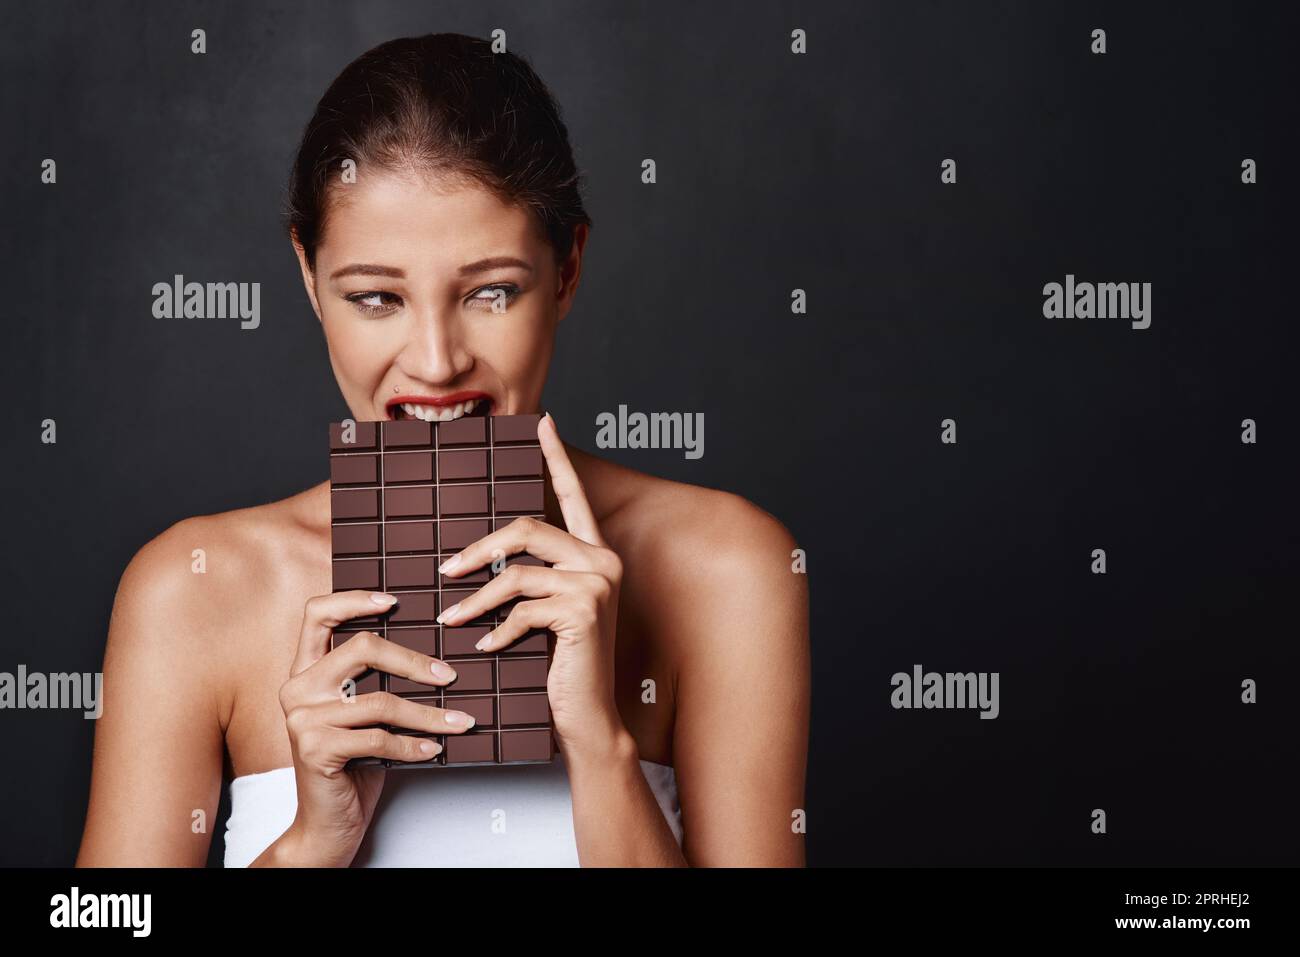 Schokolade ist meine Schwäche. Studioaufnahme einer attraktiven jungen Frau, die in eine Schokoladenplatte beißt. Stockfoto